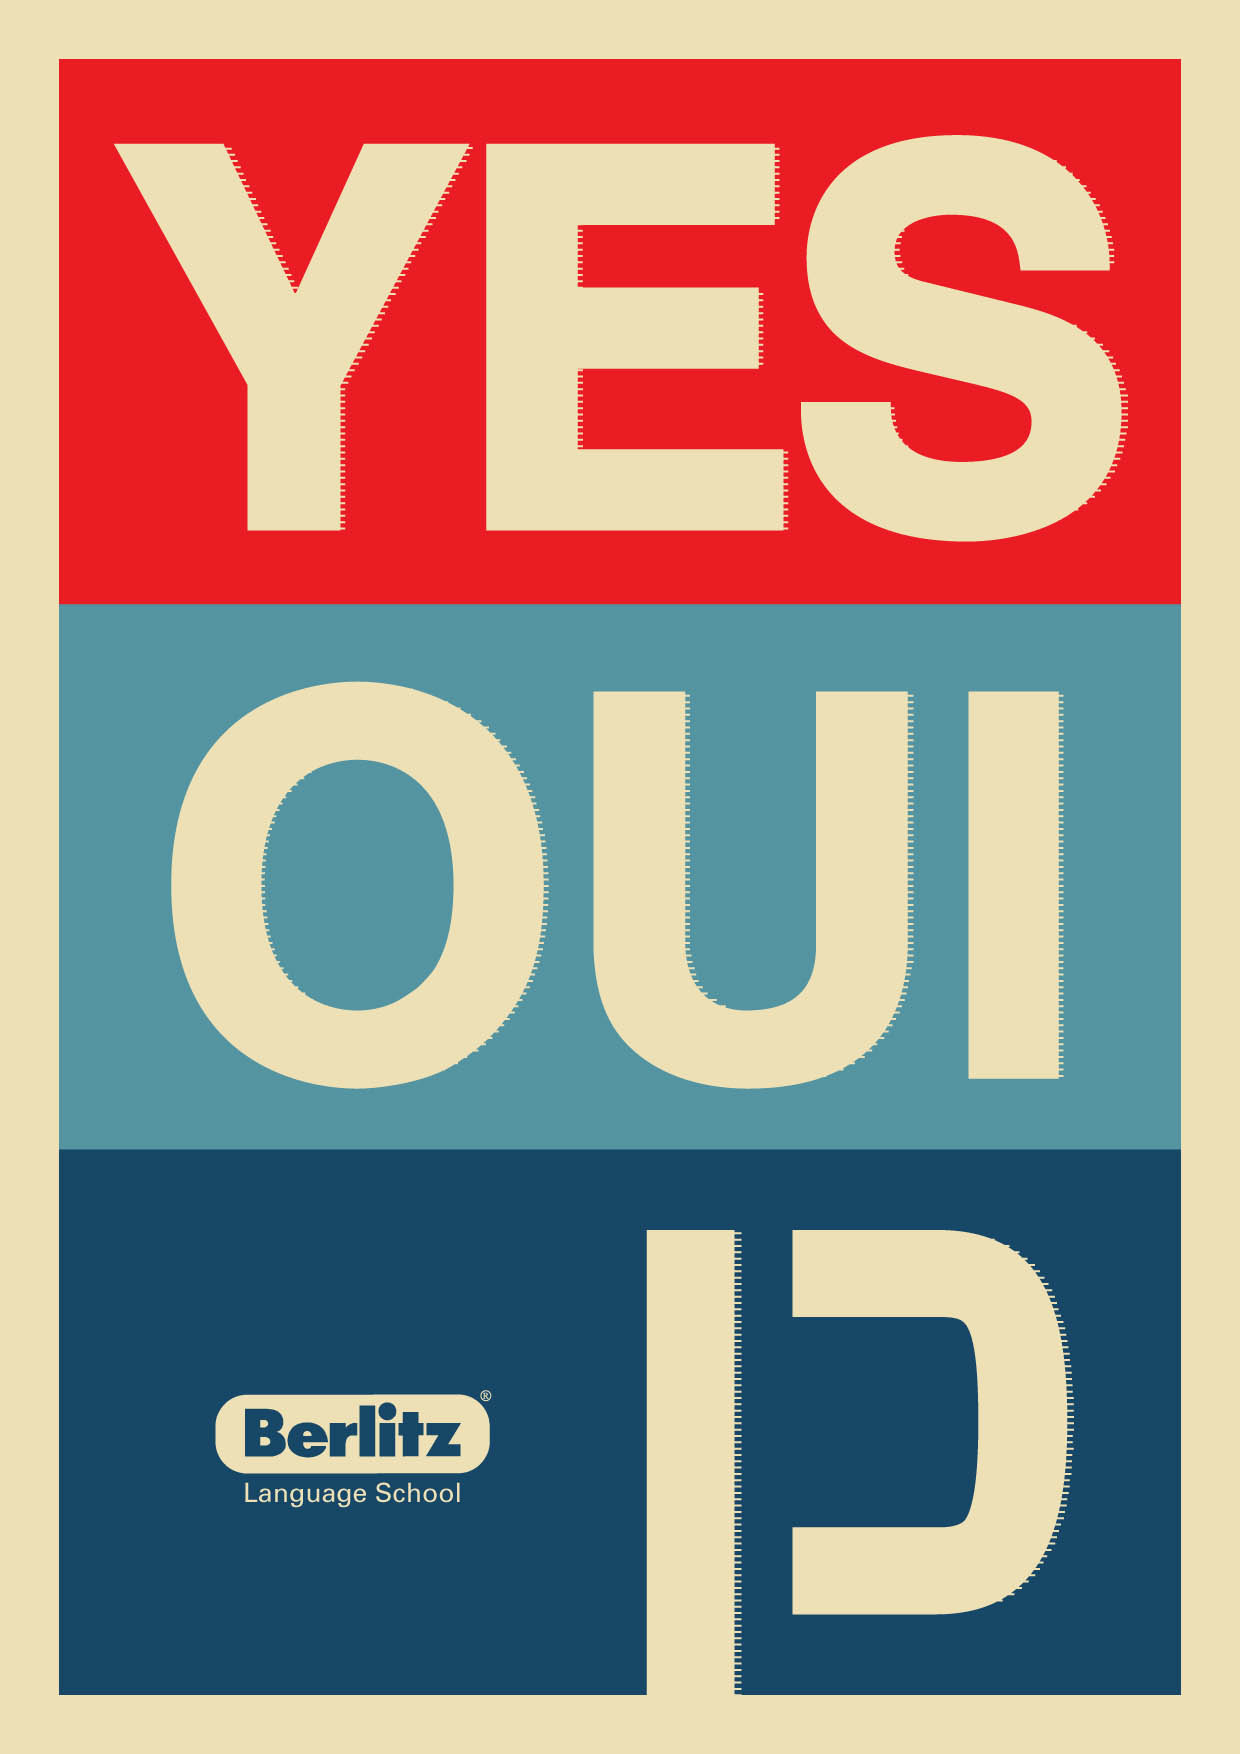 Yes we can - Berlitz